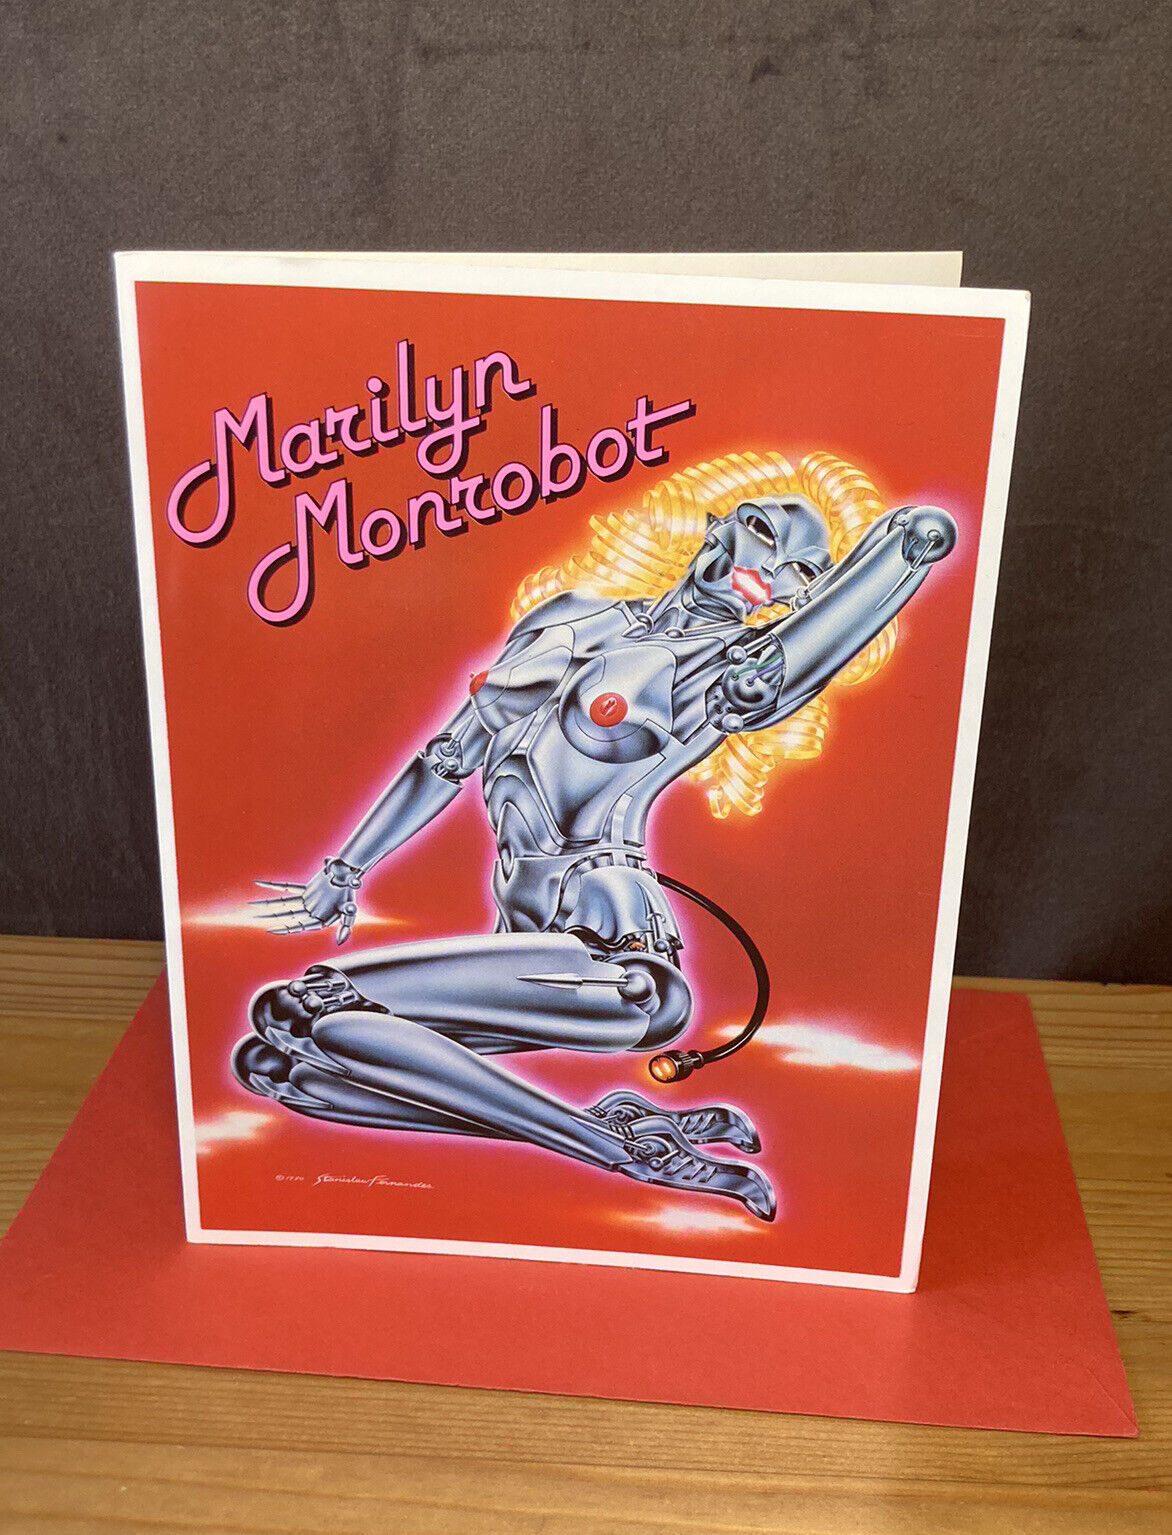 Vtg 1981 MARILYN MONROBOT Monroe Greeting Card STANISLAW FERNANDES Rockshots 80s